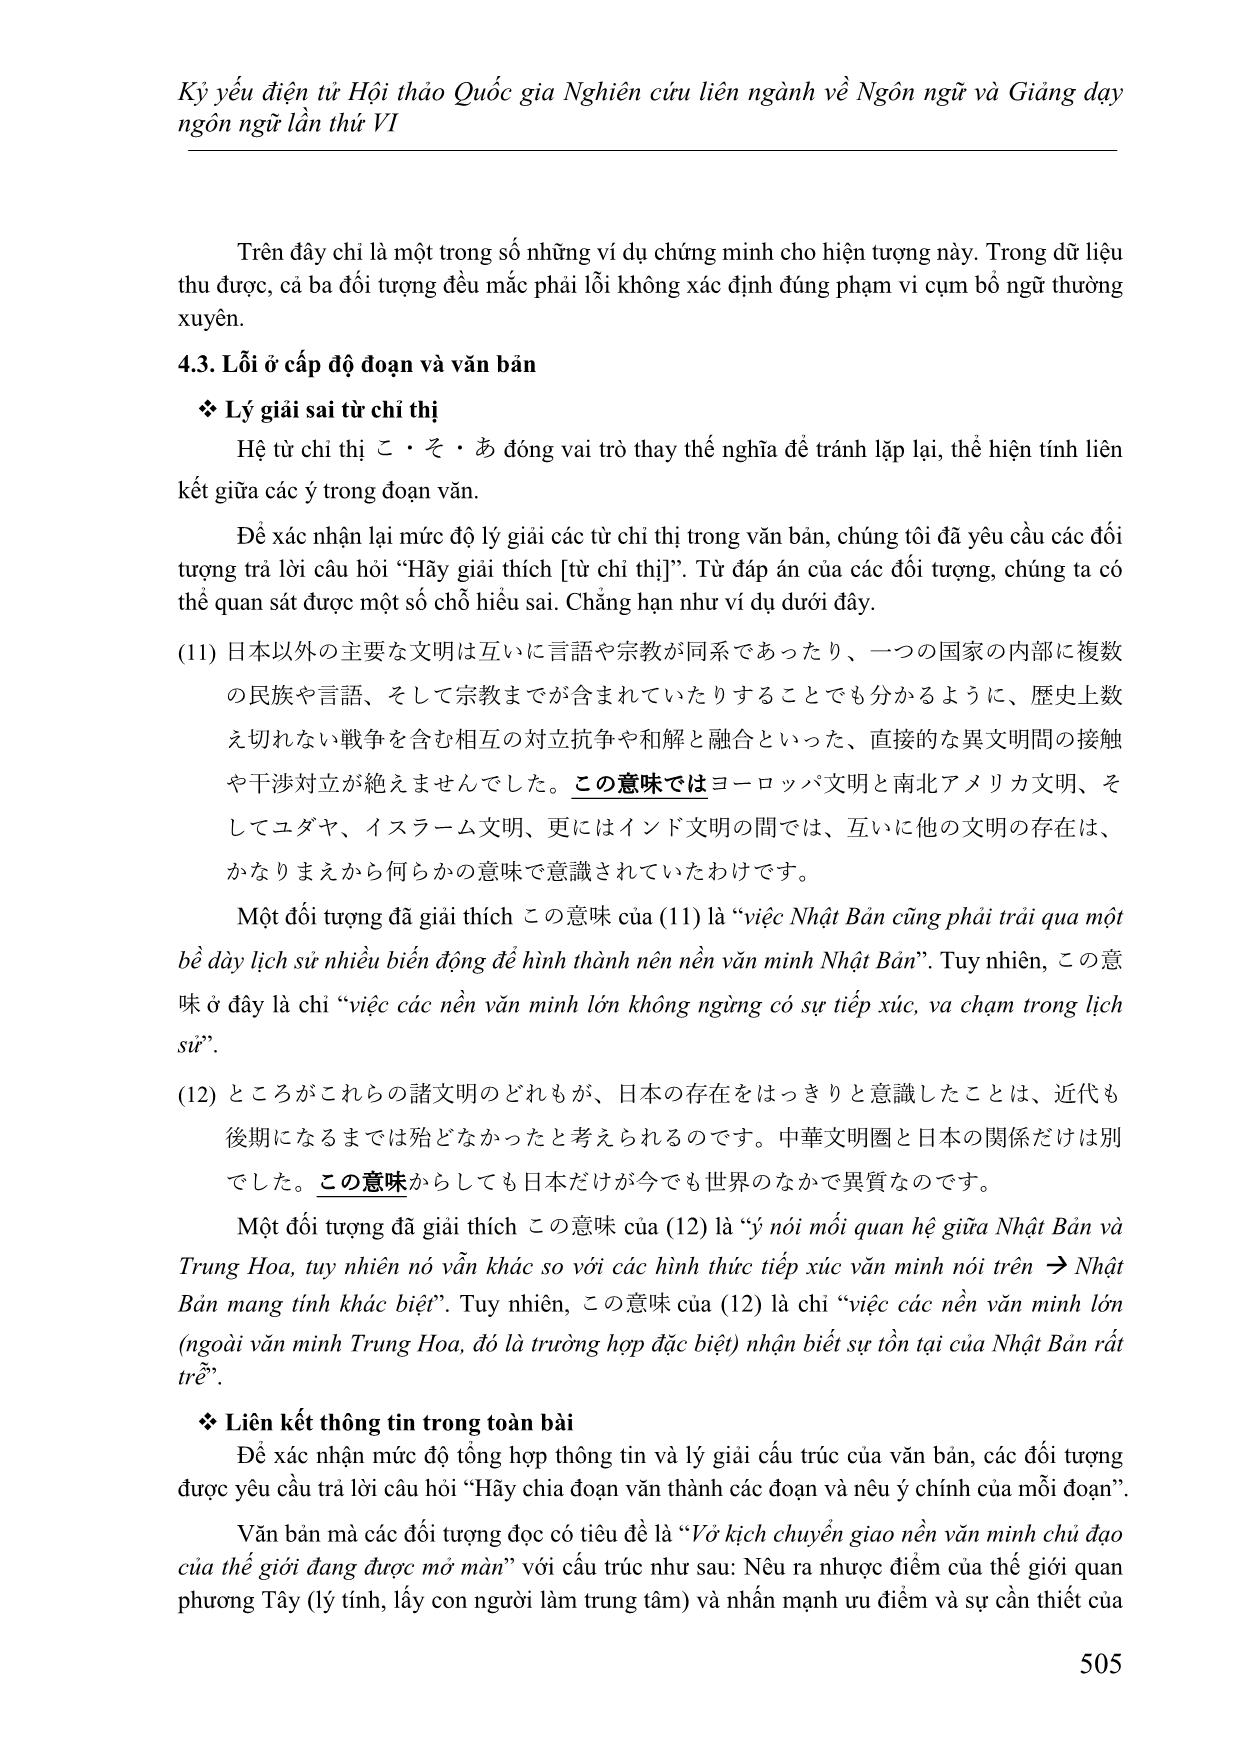 Nghiên cứu các lỗi thường gặp của người học Việt Nam ở trình độ cao cấp khi đọc hiểu văn bản tiếng Nhật trang 10